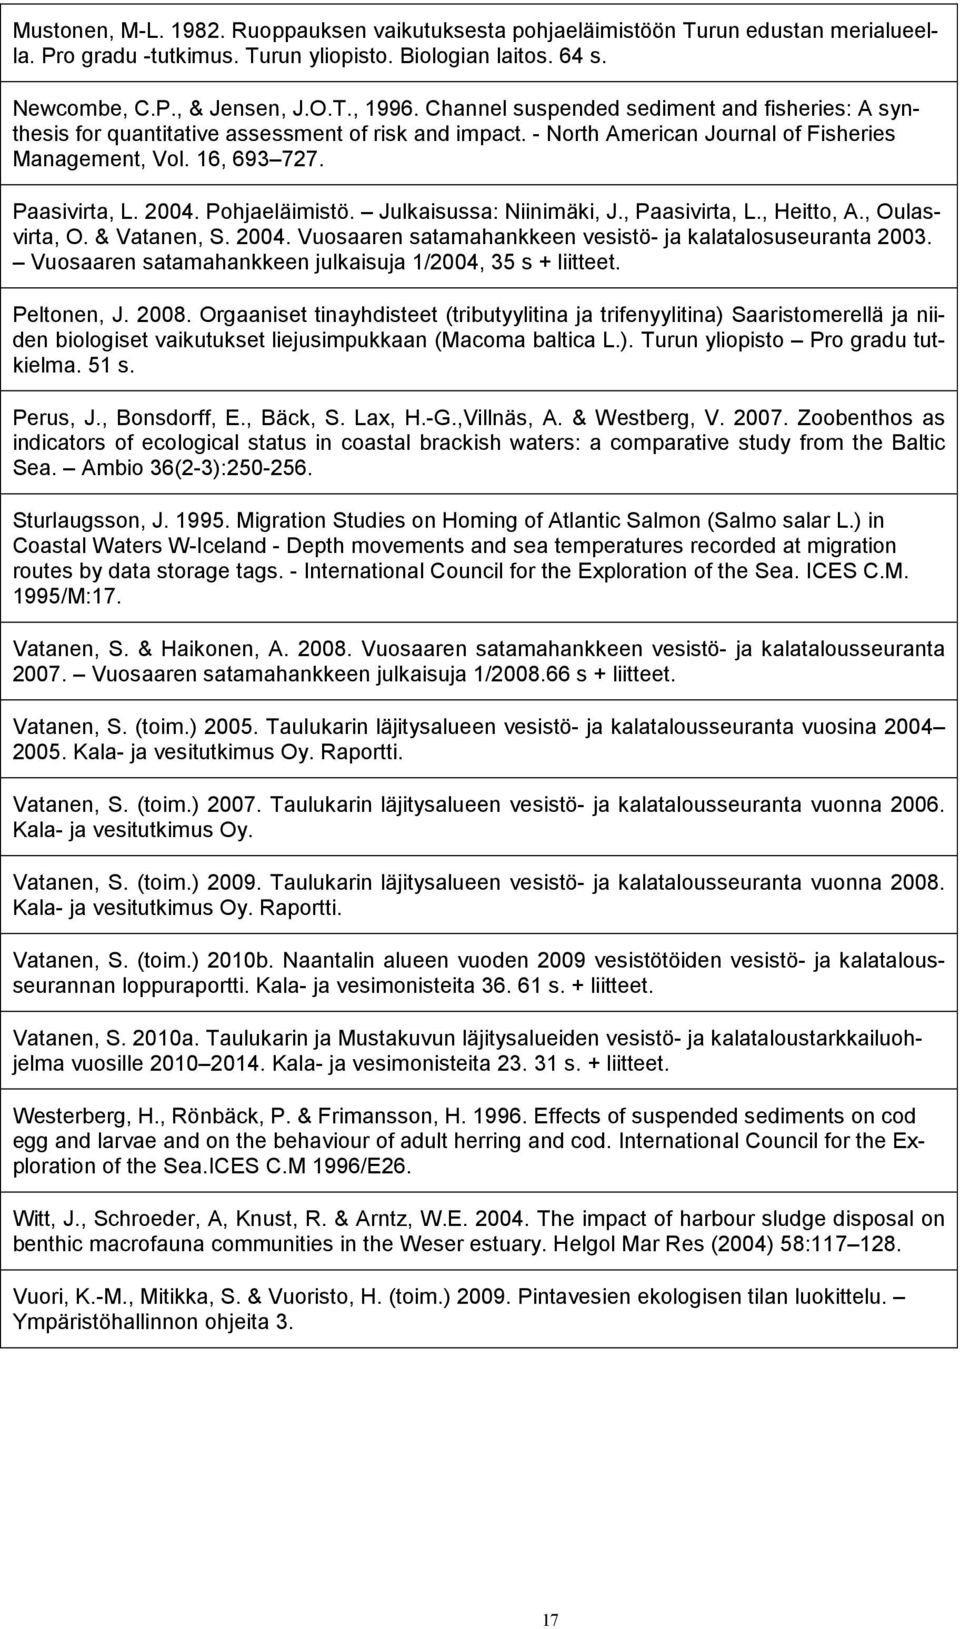 Pohjaeläimistö. Julkaisussa: Niinimäki, J., Paasivirta, L., Heitto, A., Oulasvirta, O. & Vatanen, S. 004. Vuosaaren satamahankkeen vesistö- ja kalatalosuseuranta 00.